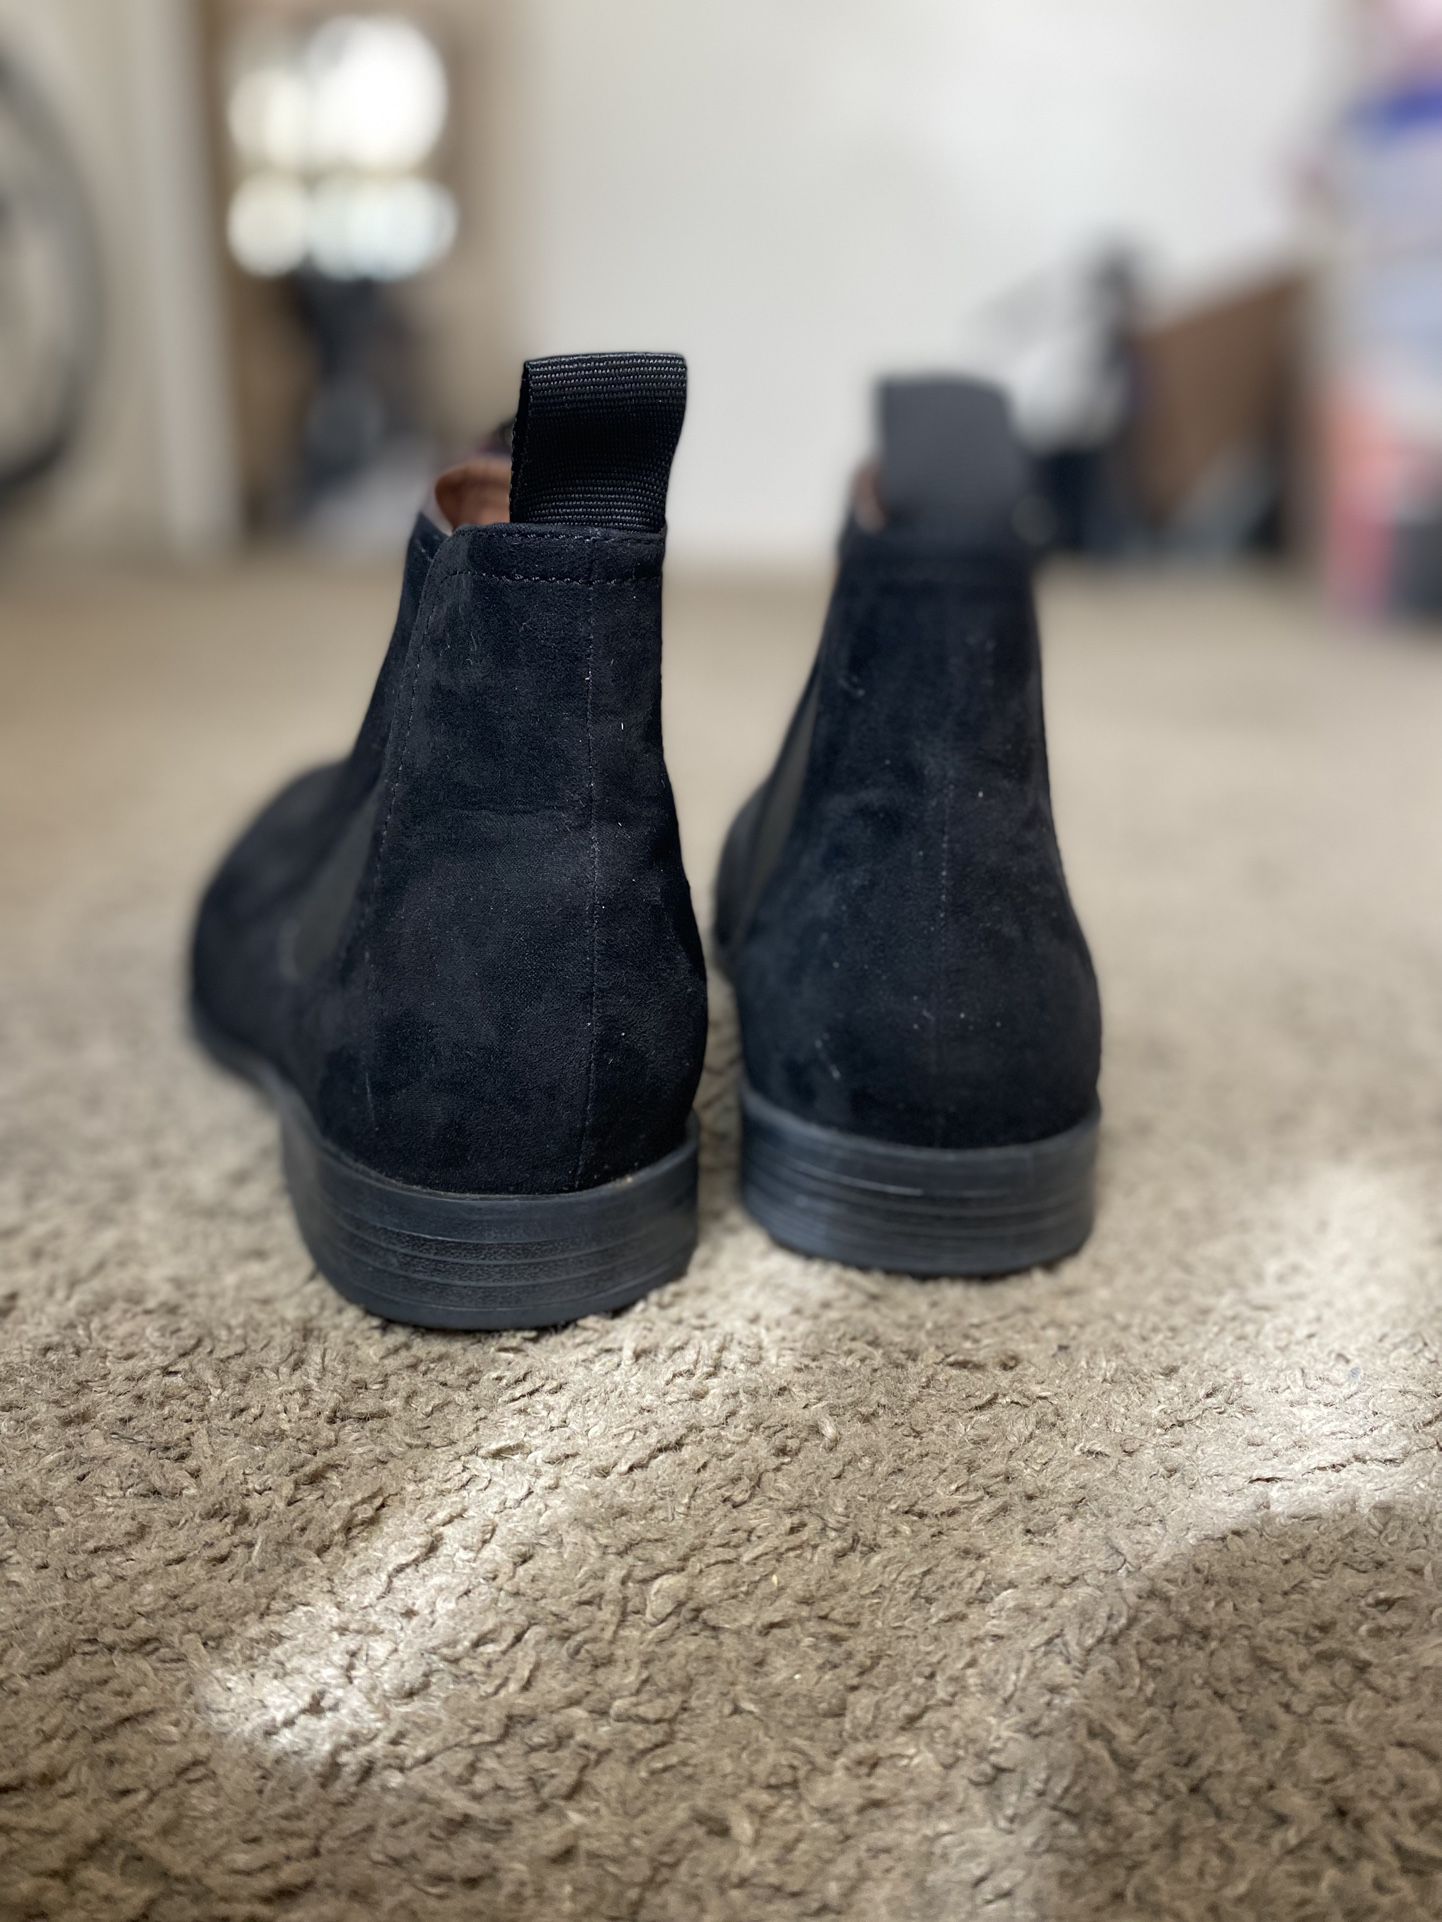 H&M Men's Black Chelsea Boots